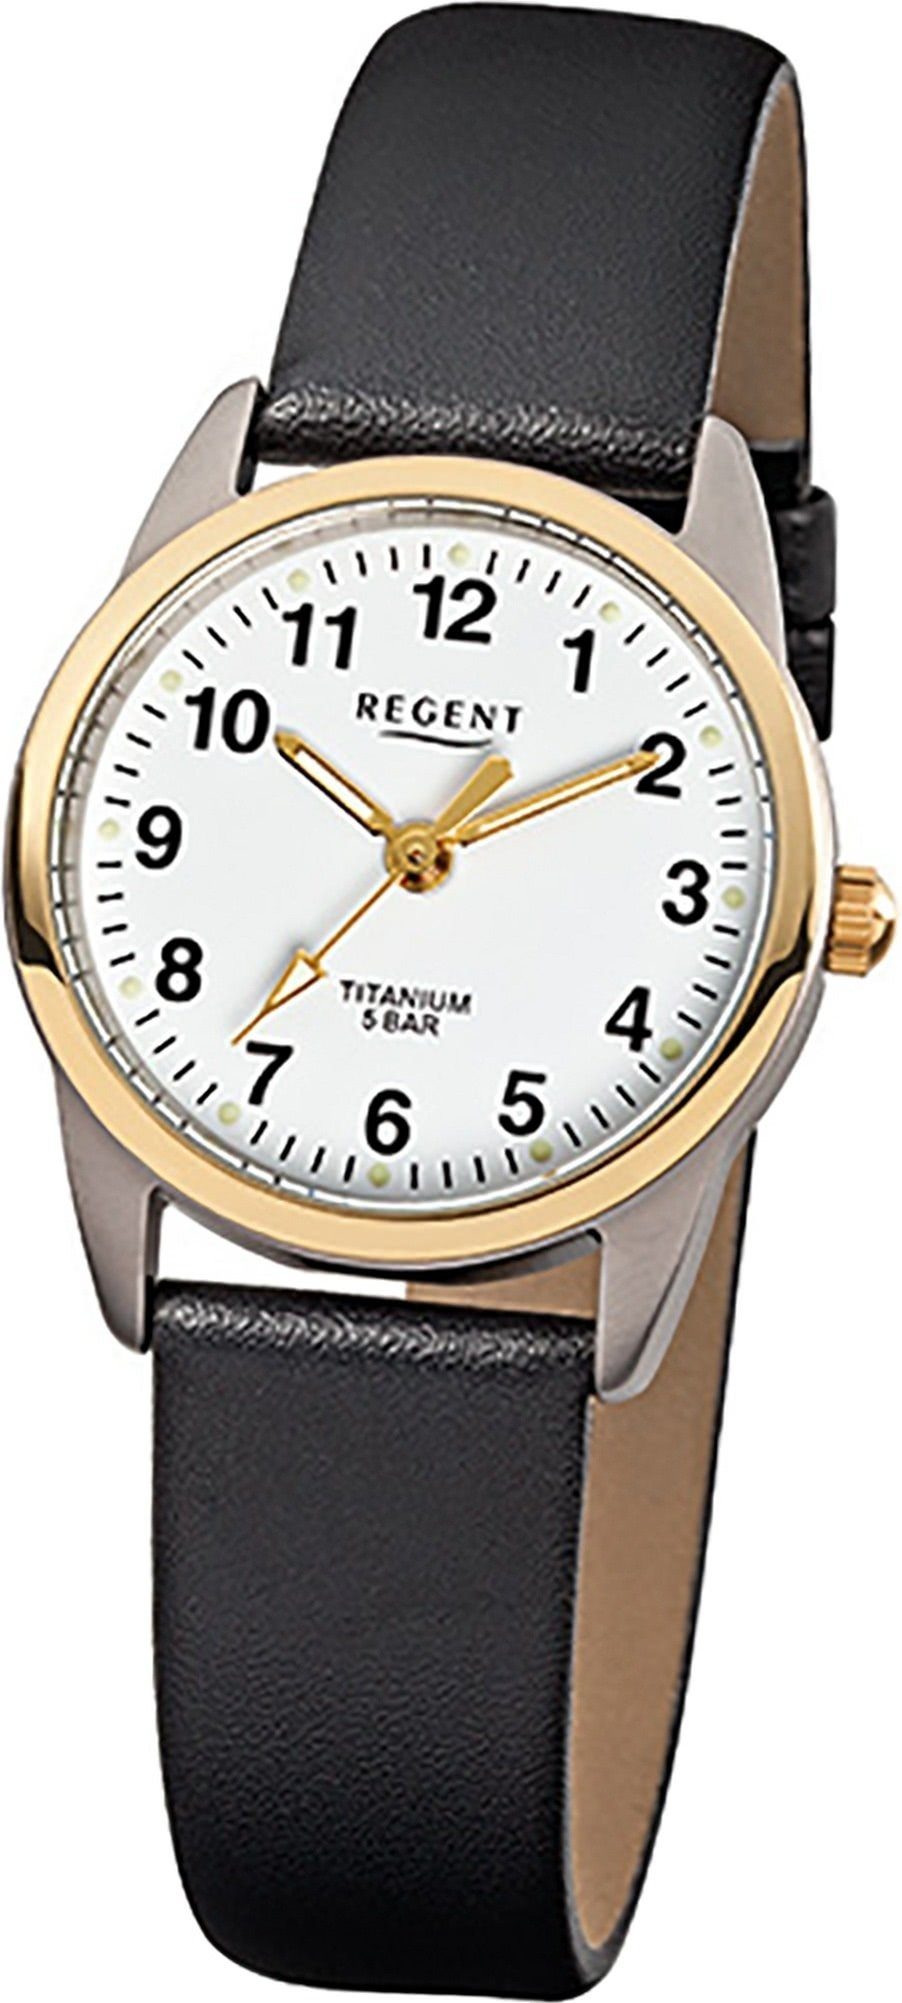 Regent Quarzuhr Regent Leder Damen Uhr F-661 Quarzuhr, Damenuhr Lederarmband schwarz, rundes Gehäuse, klein (ca. 26mm)